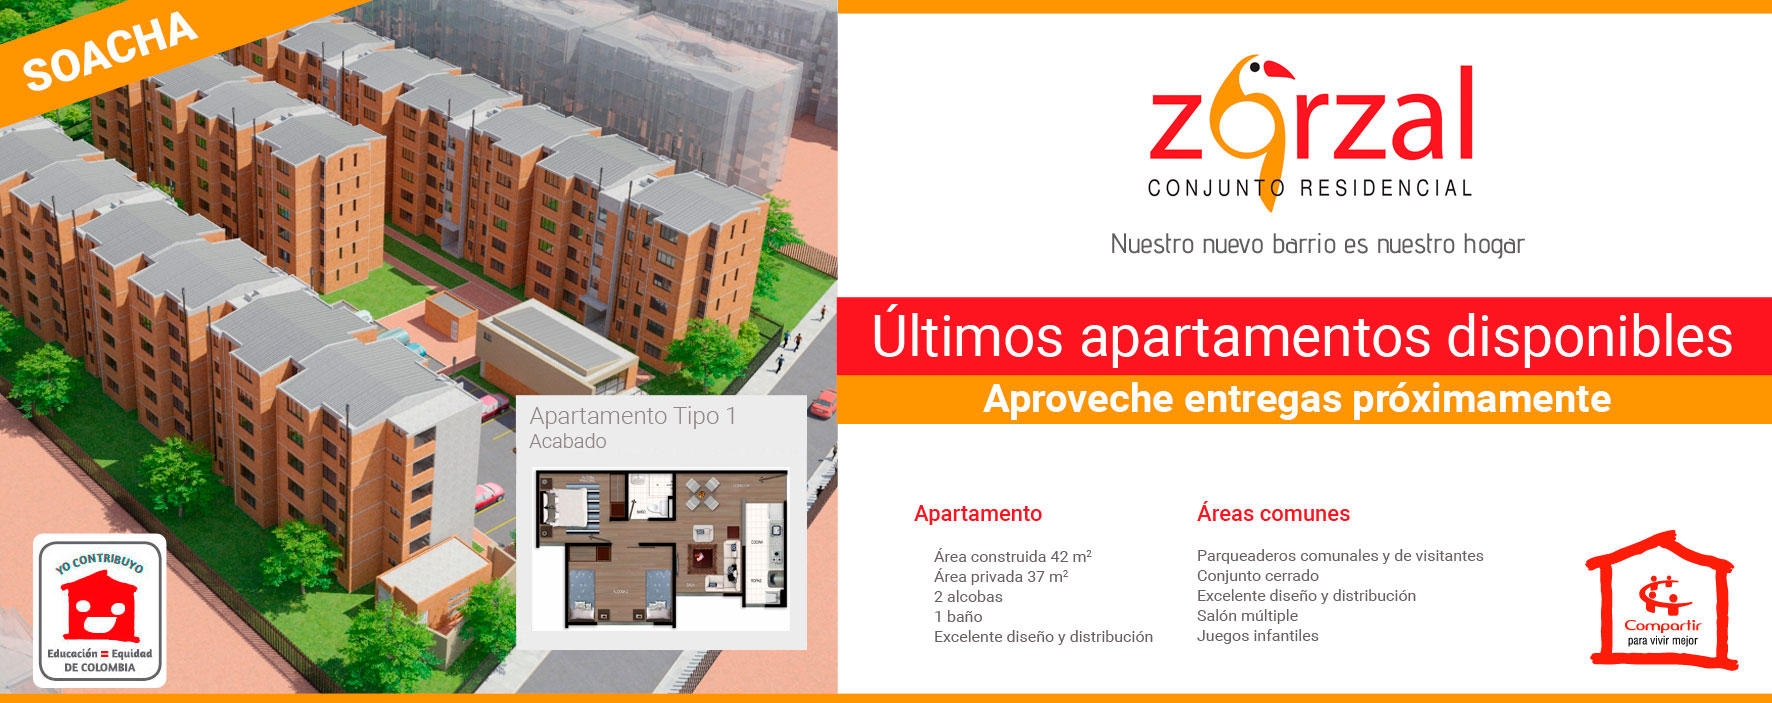 El Zorzal, conjunto residencial